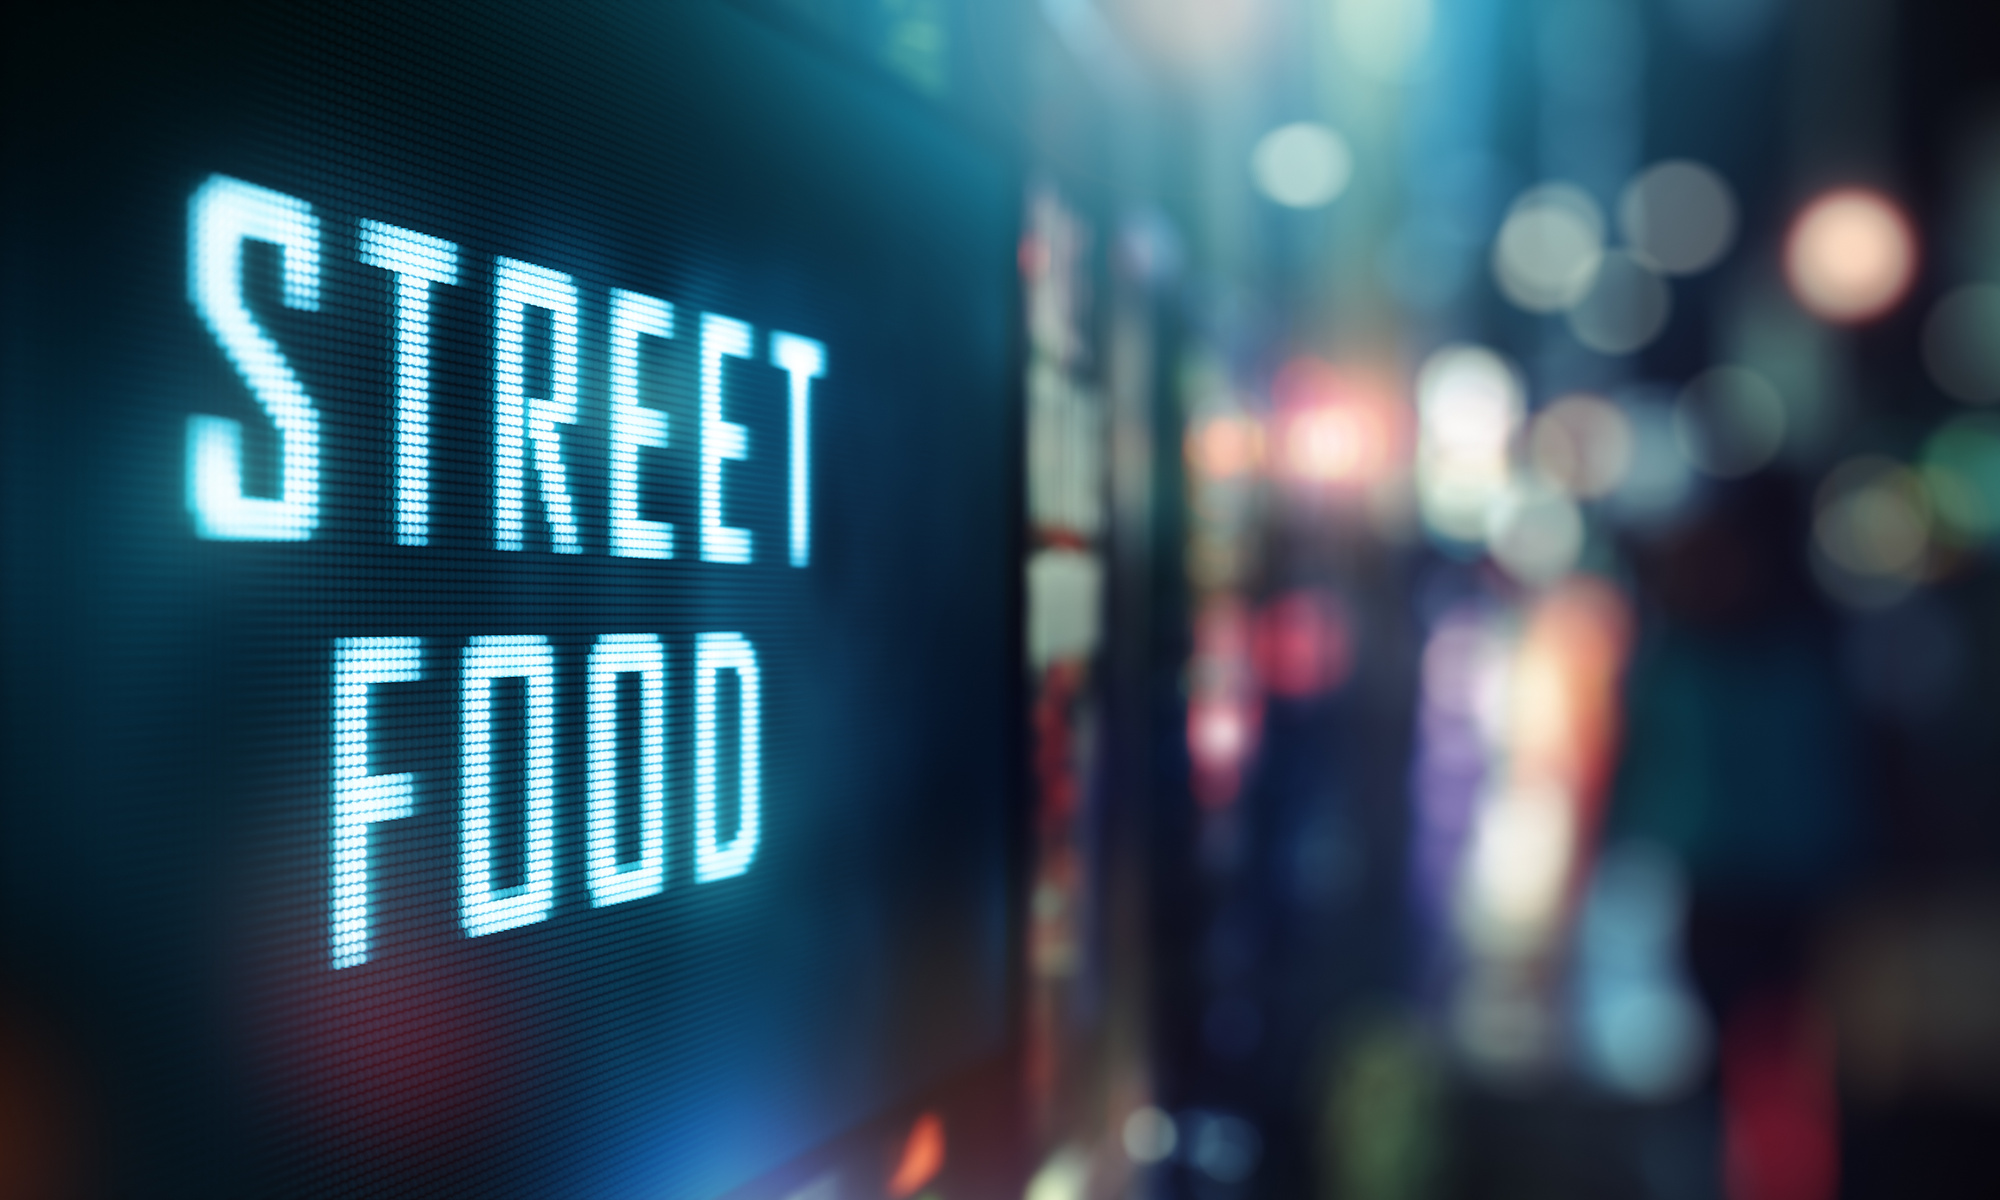 Street Food signage